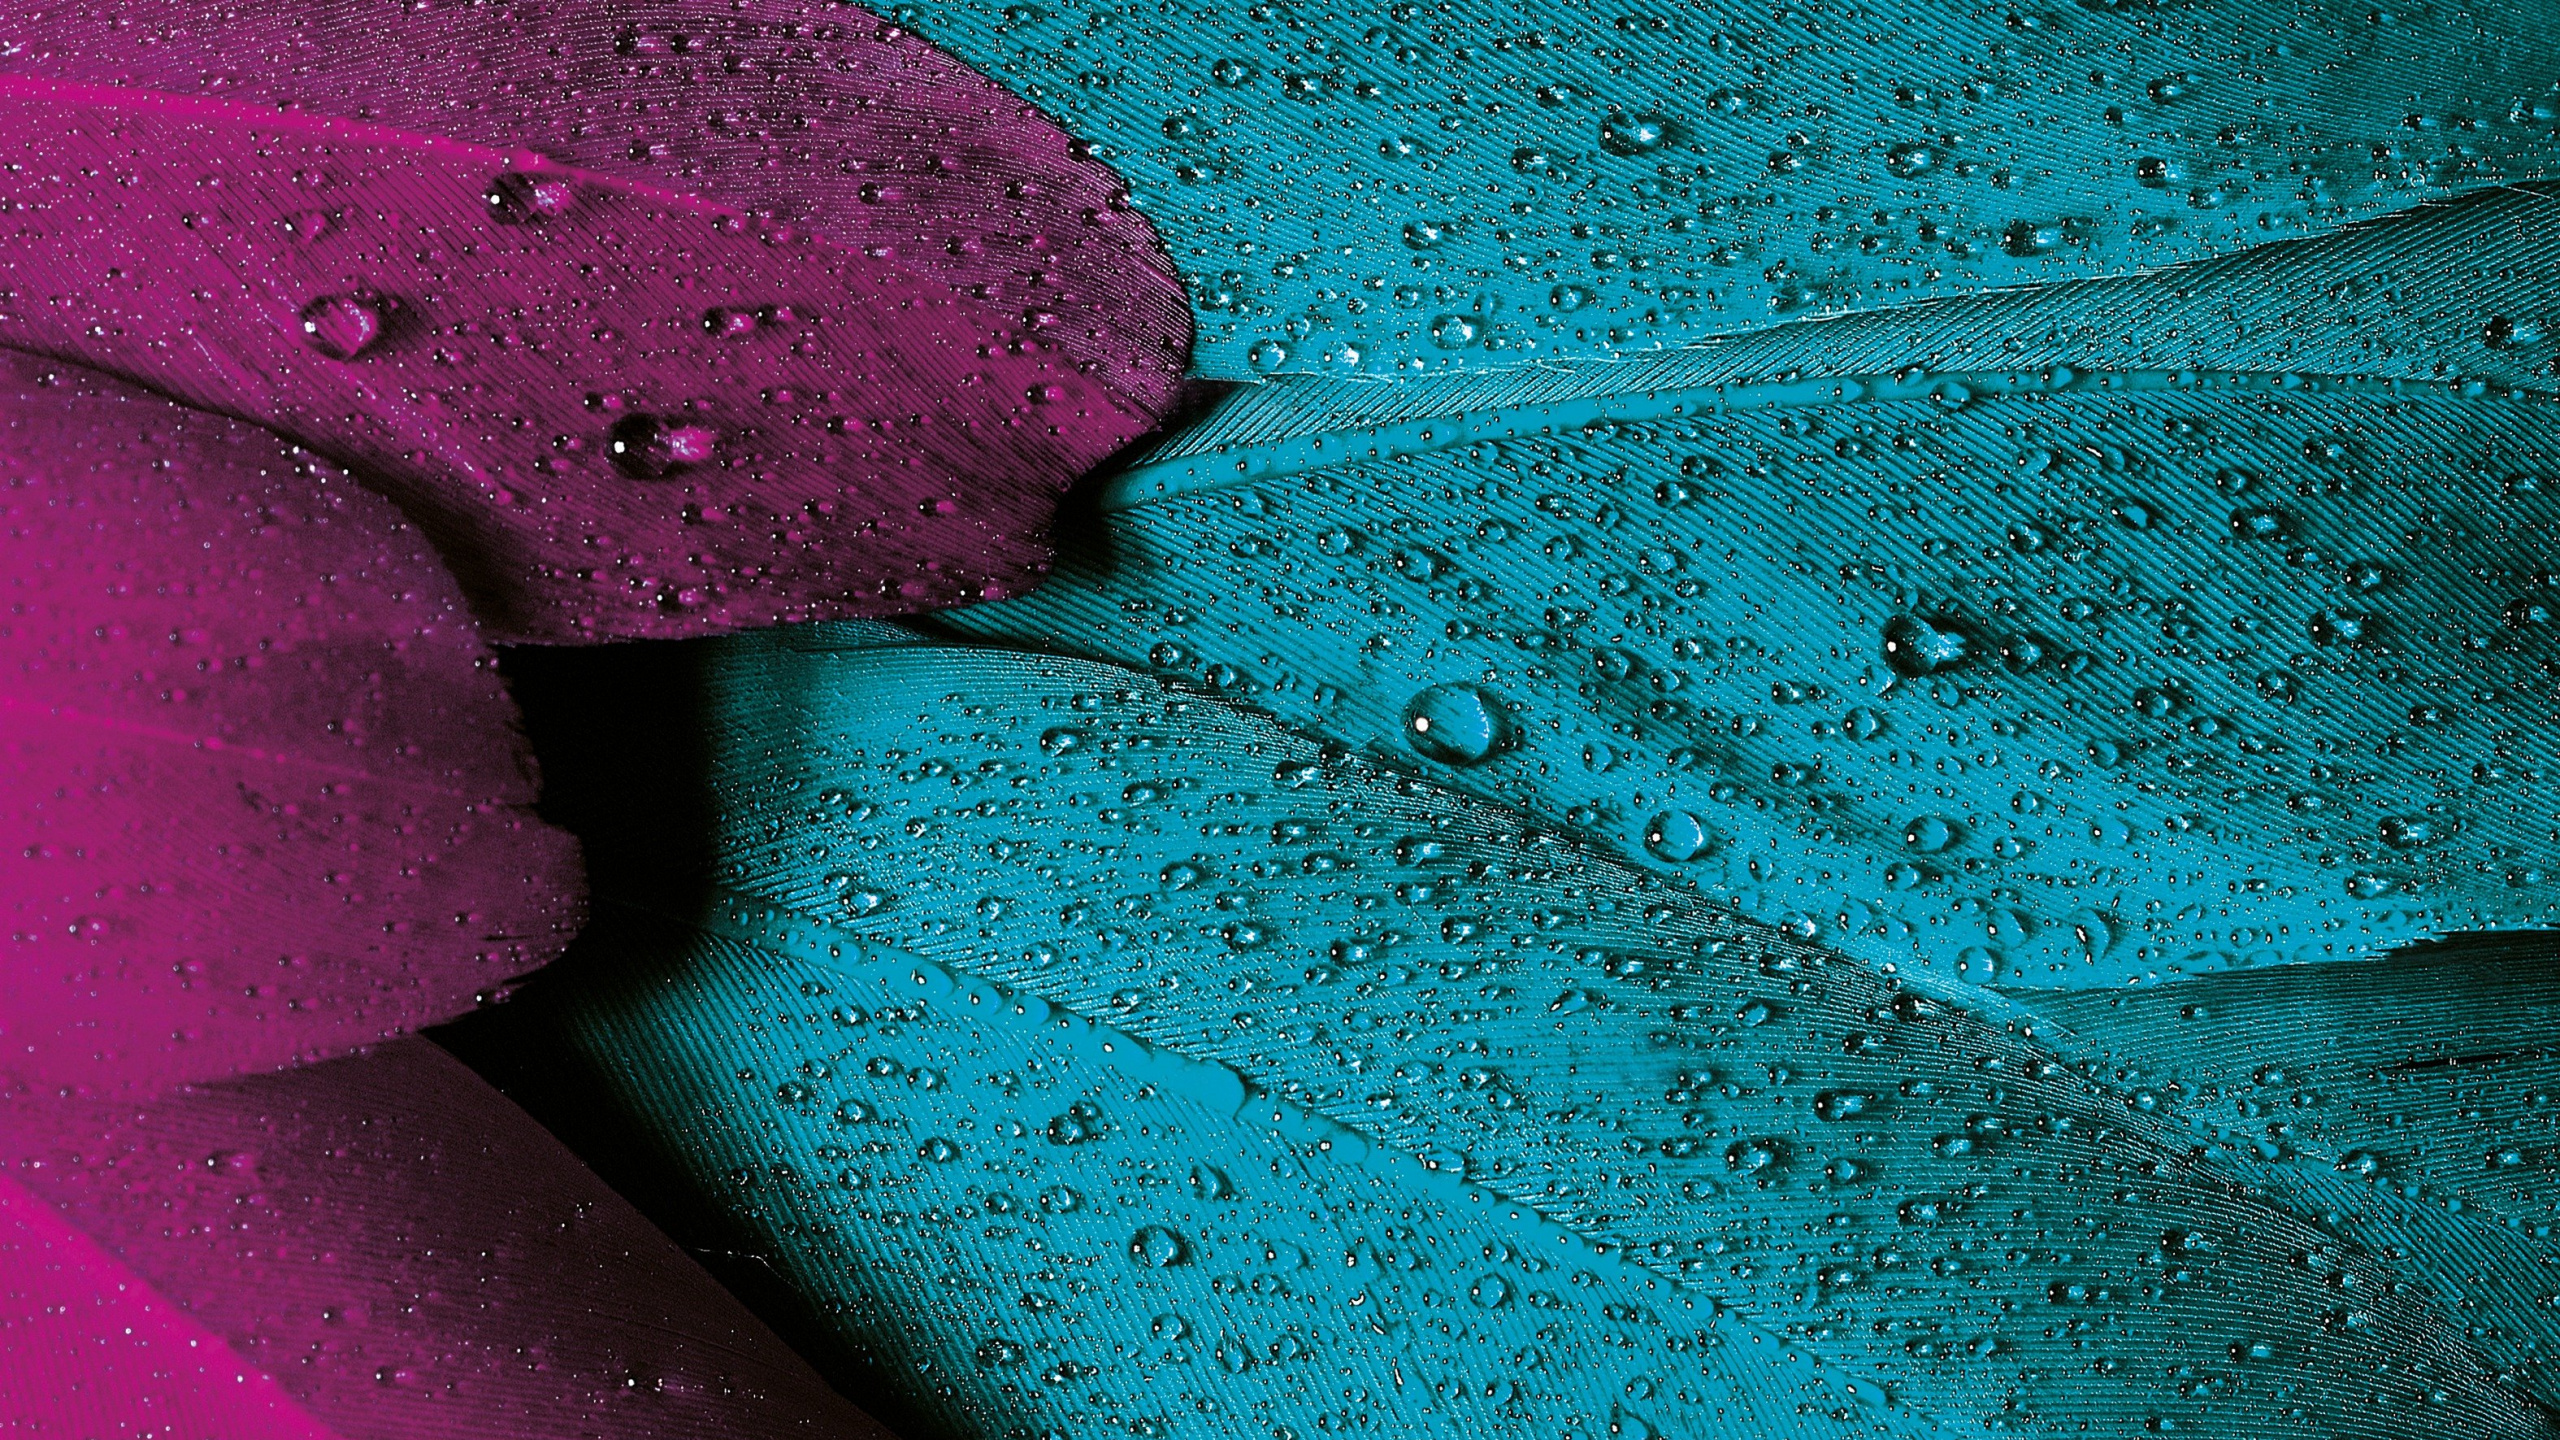 Violeta, el Esquema de Color, Teal, Color, Morado. Wallpaper in 2560x1440 Resolution